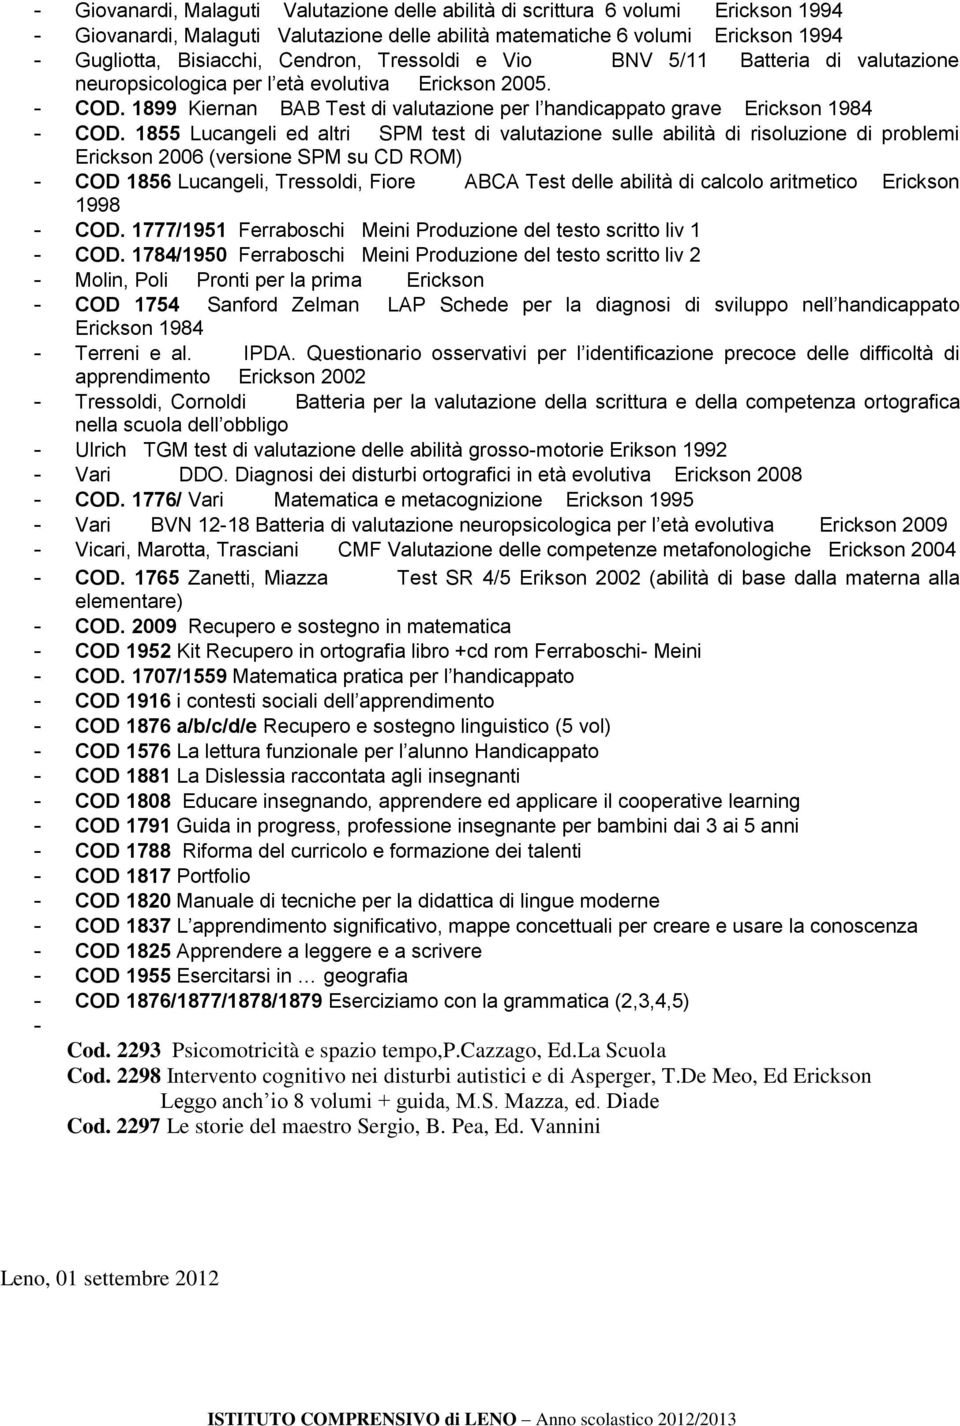 1855 Lucangeli ed altri SPM test di valutazione sulle abilità di risoluzione di problemi Erickson 2006 (versione SPM su CD ROM) - COD 1856 Lucangeli, Tressoldi, Fiore ABCA Test delle abilità di